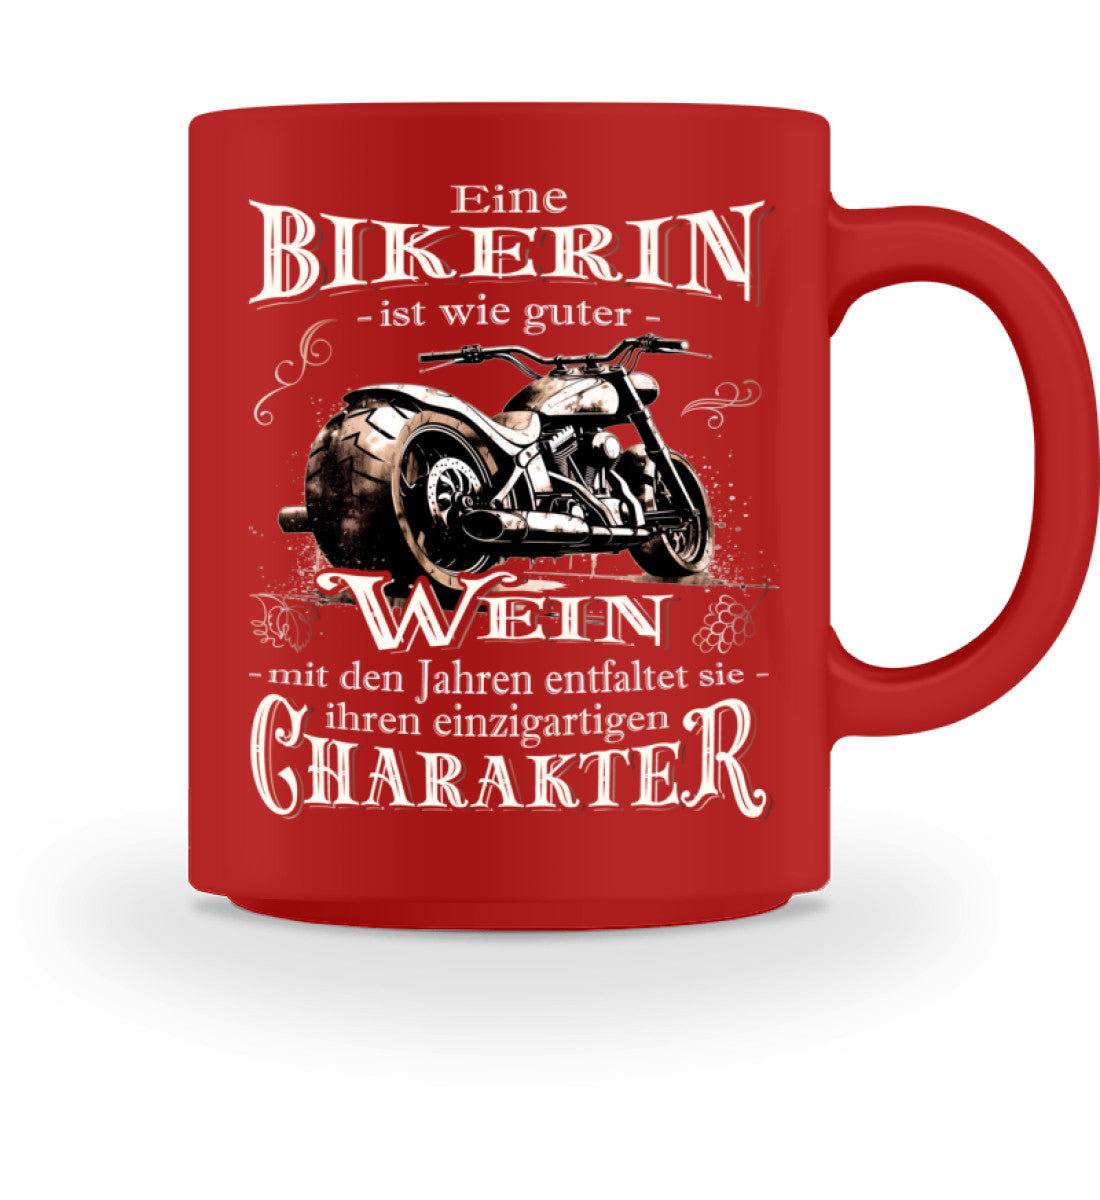 Eine Bikerin Tasse für Motorradfahrerinnen, von Wingbikers, mit dem beidseitigen Aufdruck, Eine Bikerin ist wie guter Wein - mit den Jahren entfaltet sie ihren einzigartigen Charakter, in rot.